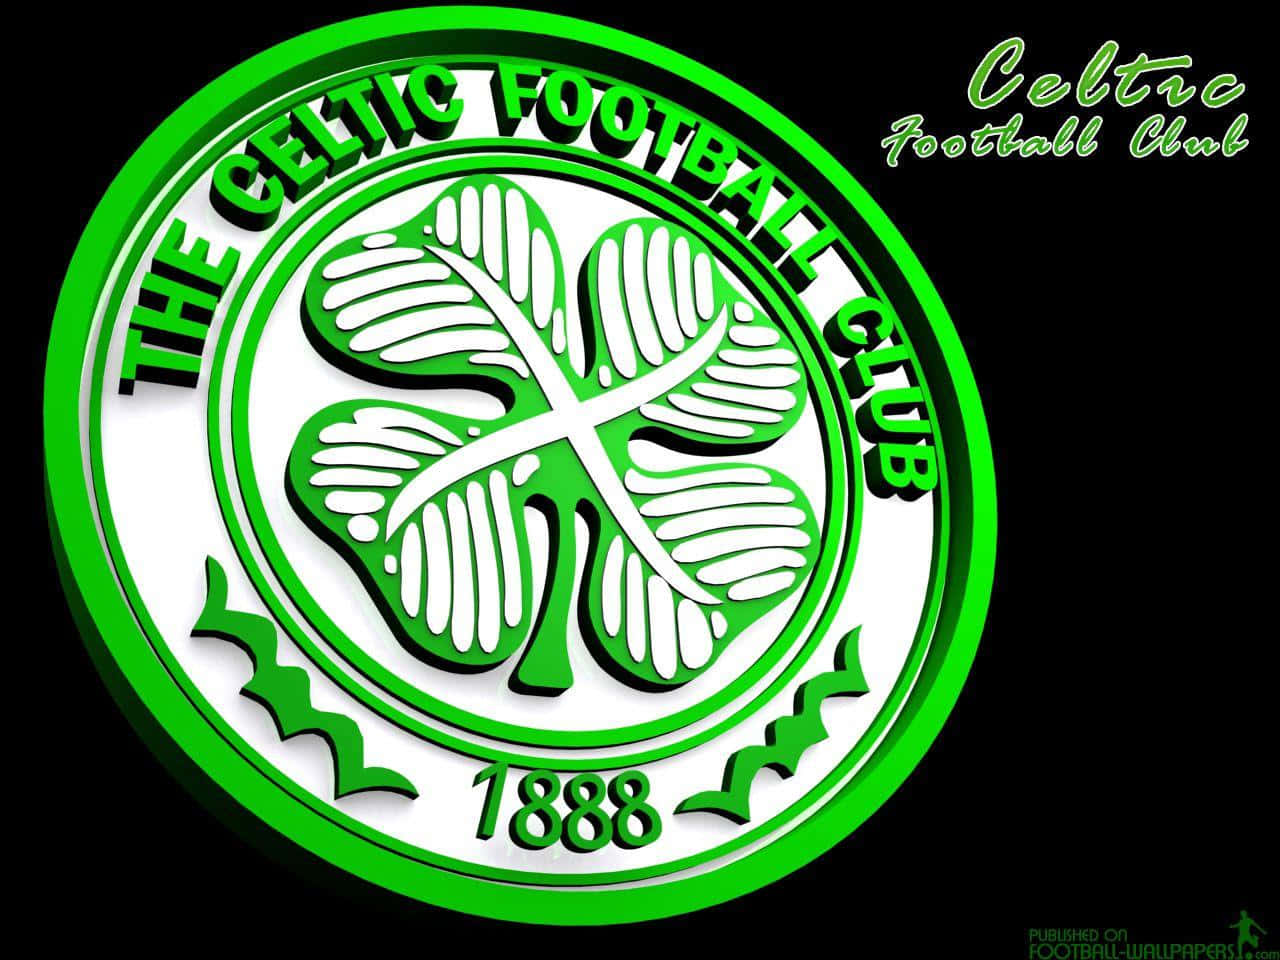 Celticfotbollsklubbslogo